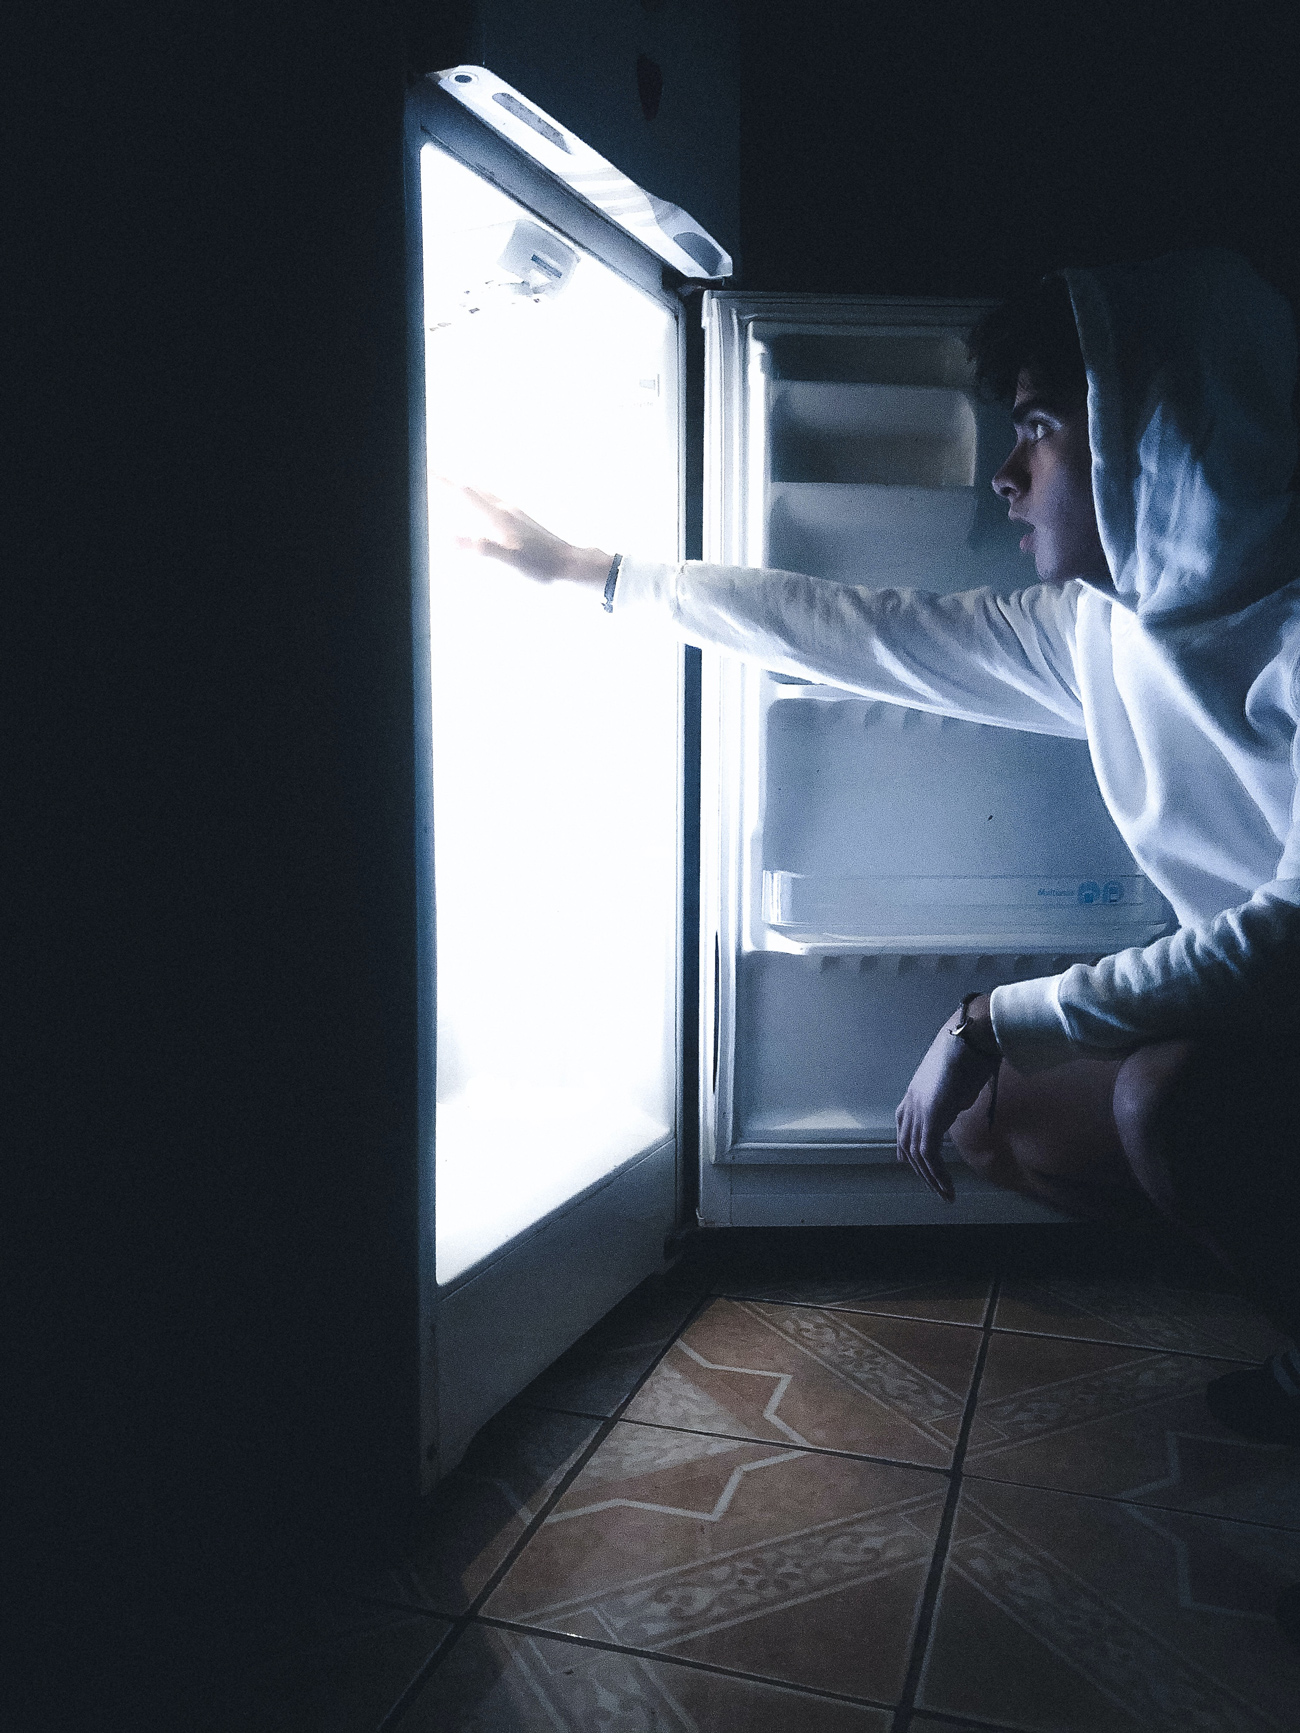 Votre frigo fait du bruit ? Voici des solutions simples et efficaces !